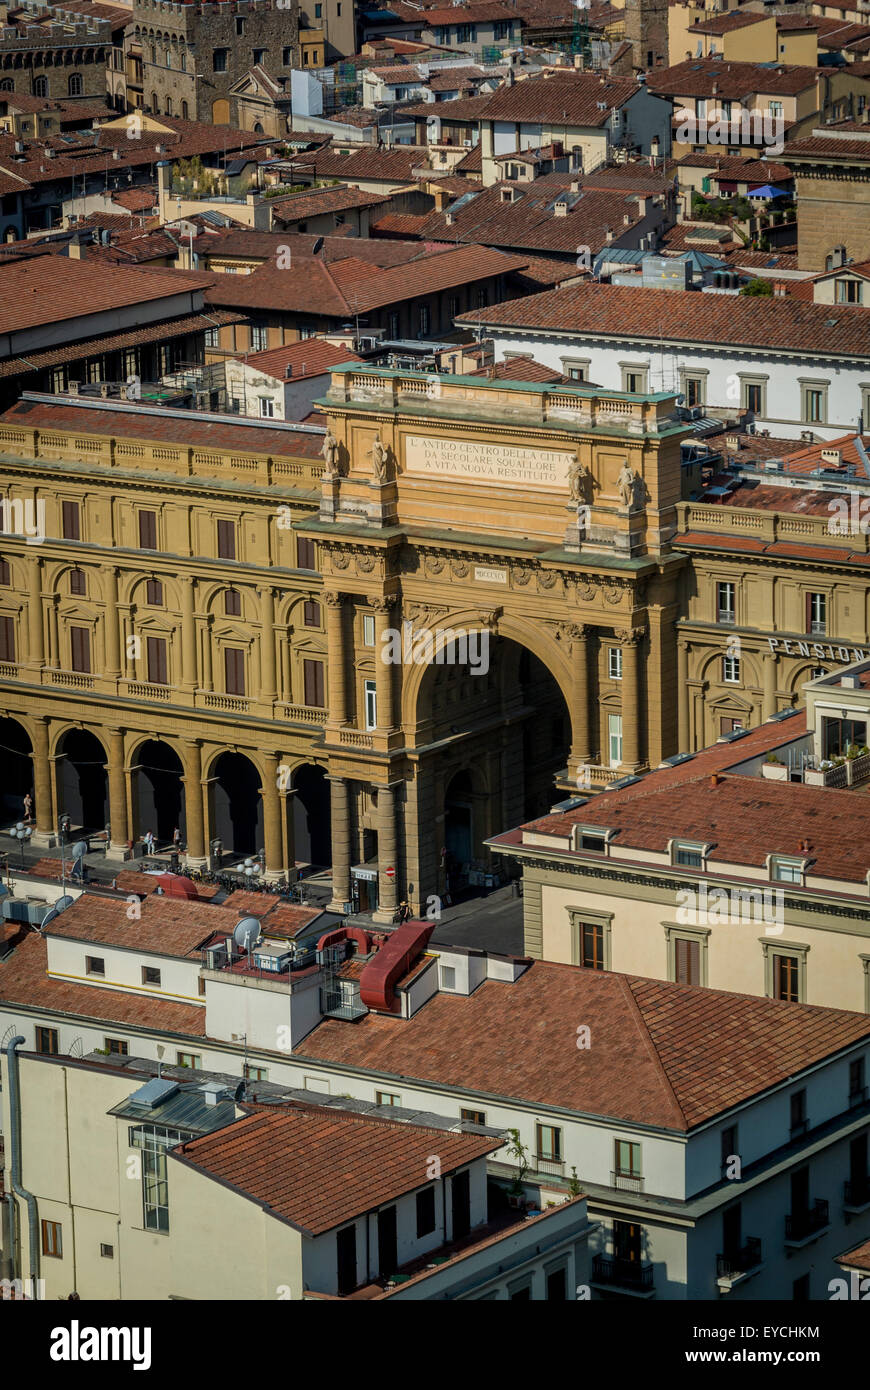 Piazzo della Repubblica, Florence, Italy. Stock Photo